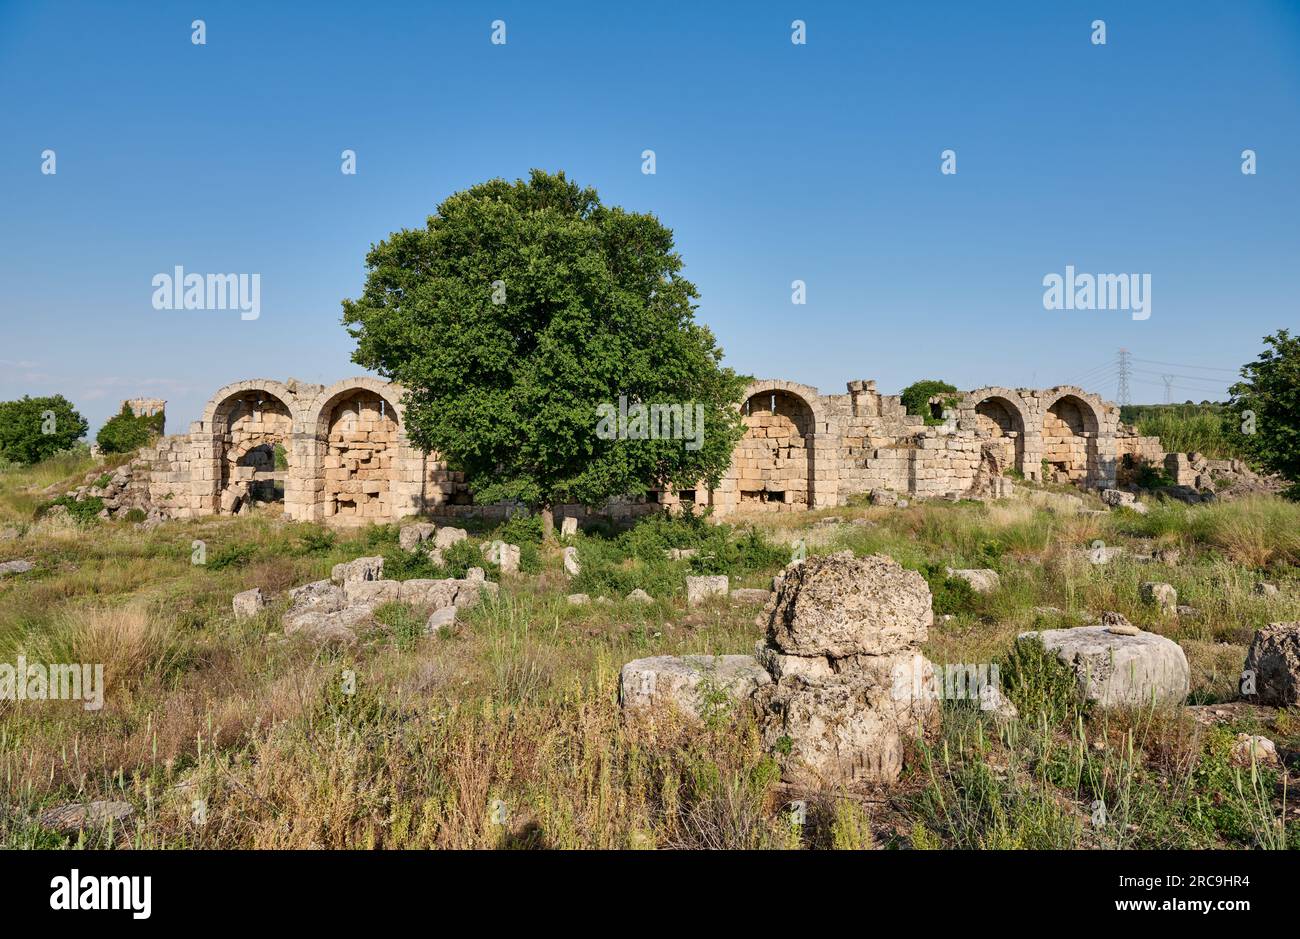 Stadtmauer der Ruinen der roemischen Stadt Perge, Antalya, Türkei    |city wall, ruins of the Roman city of Perge, Antalya, Turkey| Stock Photo